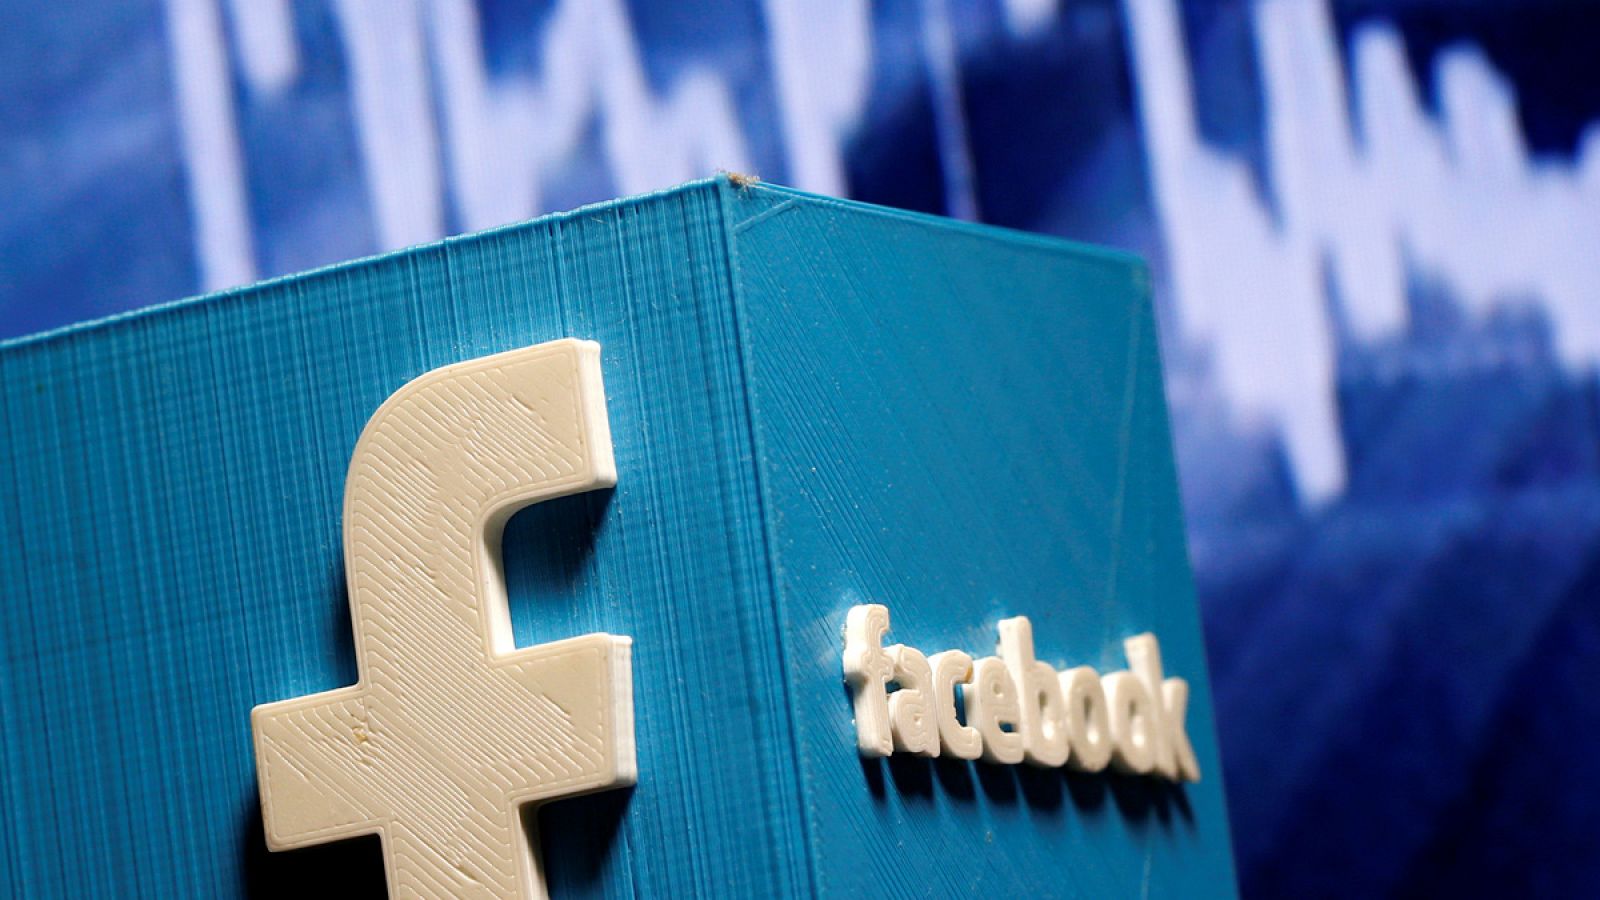 De los 7.000 millones de dólares de ingresos de Facebook en el último trimestre, unos 6.800 millones correspondieron a venta de anuncios.